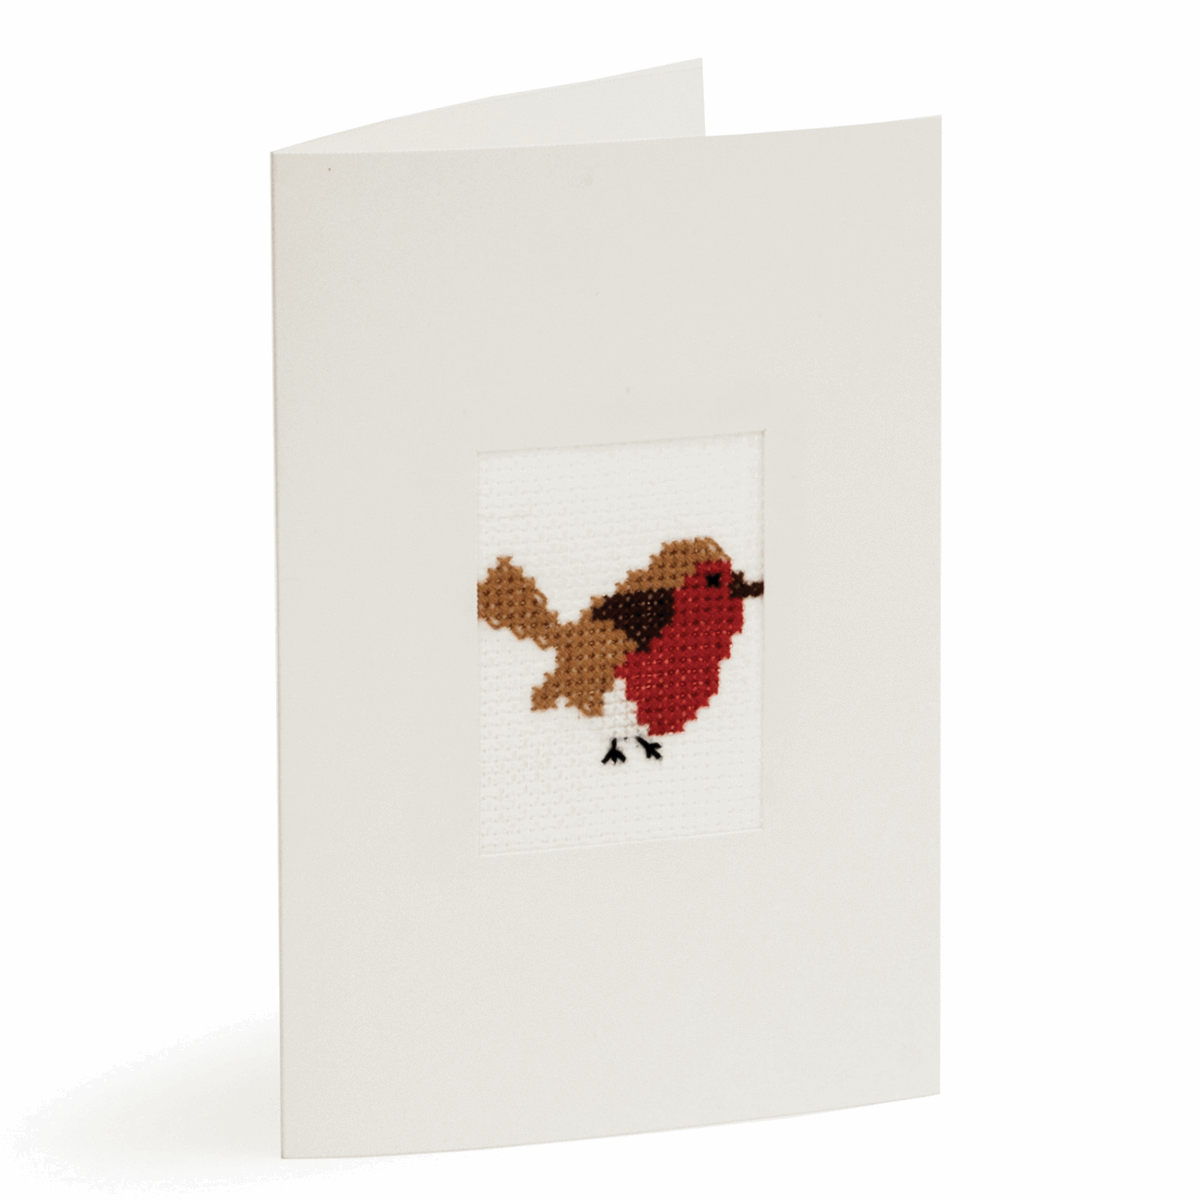 Trimits Cross Stitch Greeting Card Kit - Robin